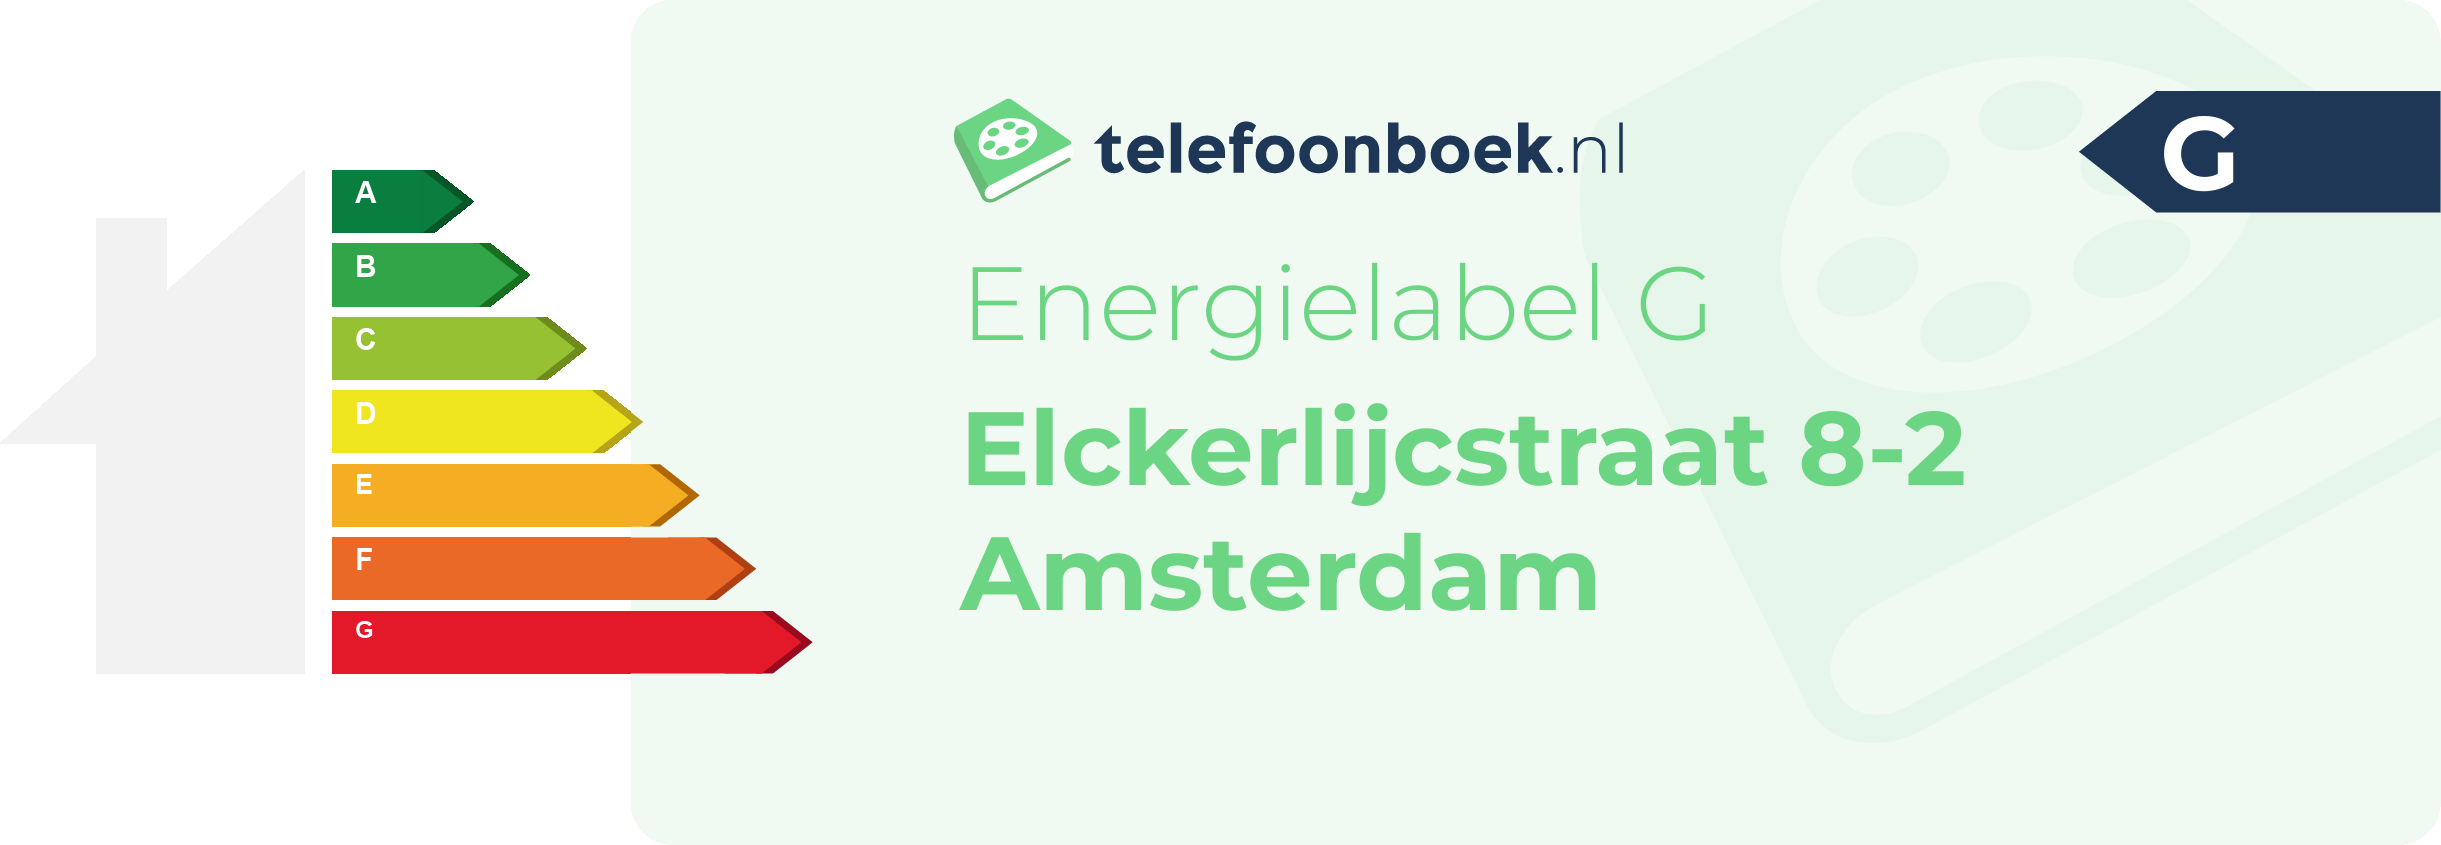 Energielabel Elckerlijcstraat 8-2 Amsterdam